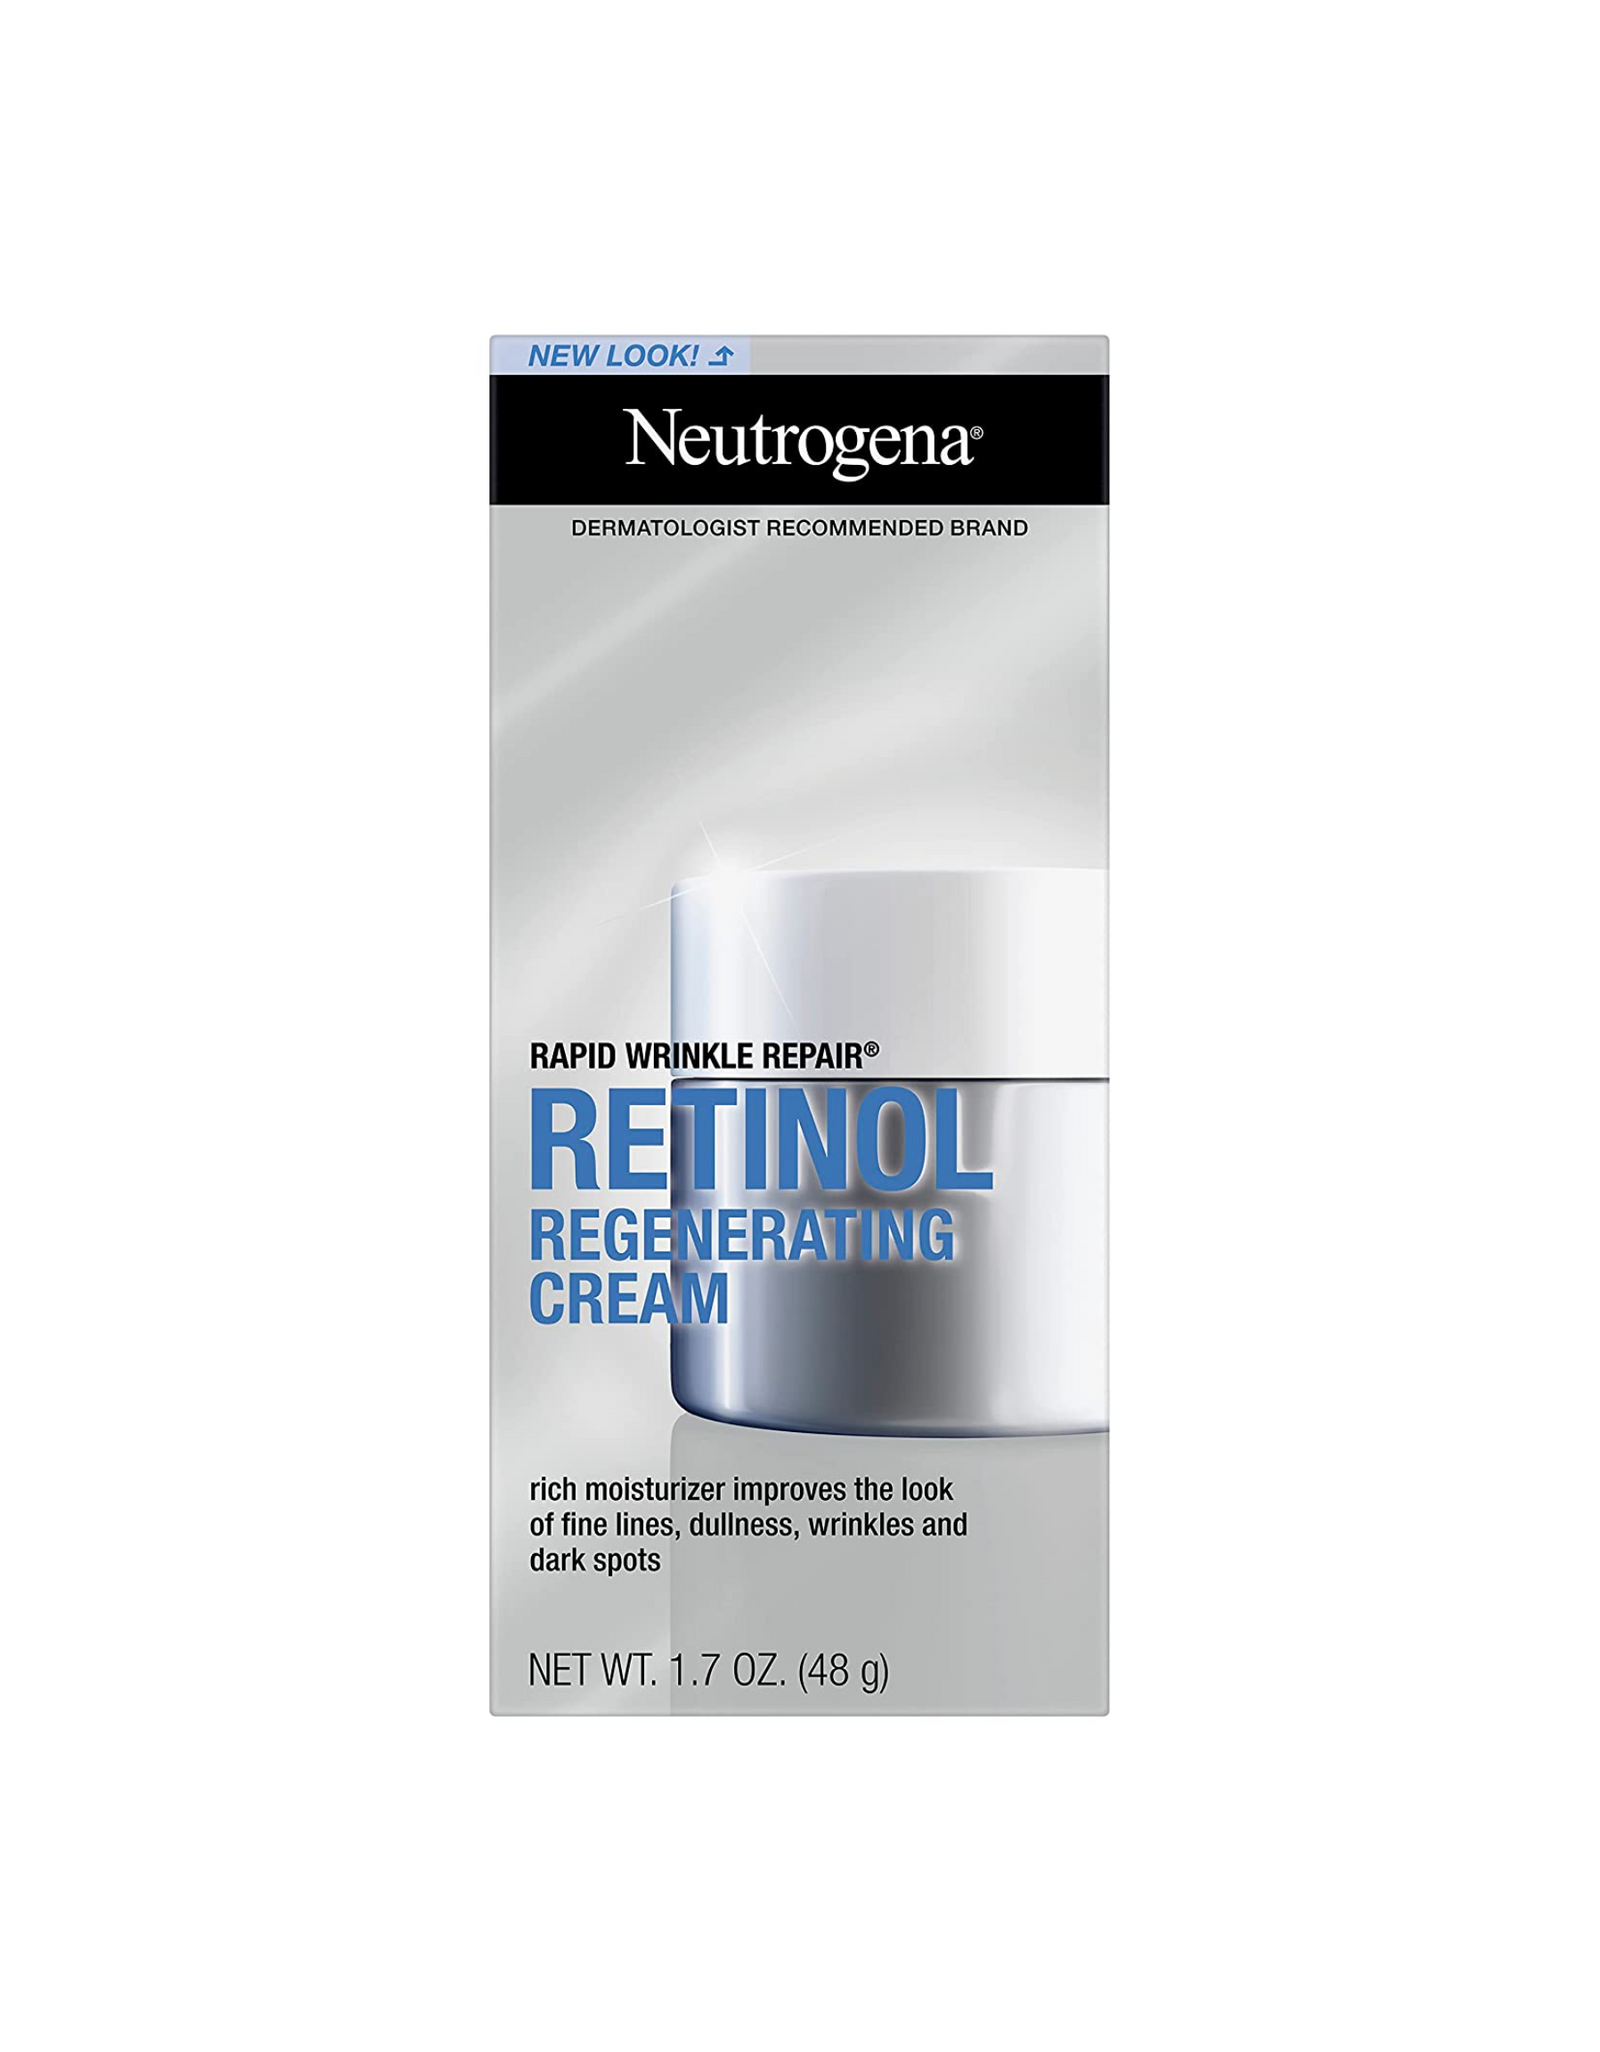 Neutrogena Rapid Wrinkle Repair Retinol Regenerating Cream & Hyaluronic Acid, 1.7 oz